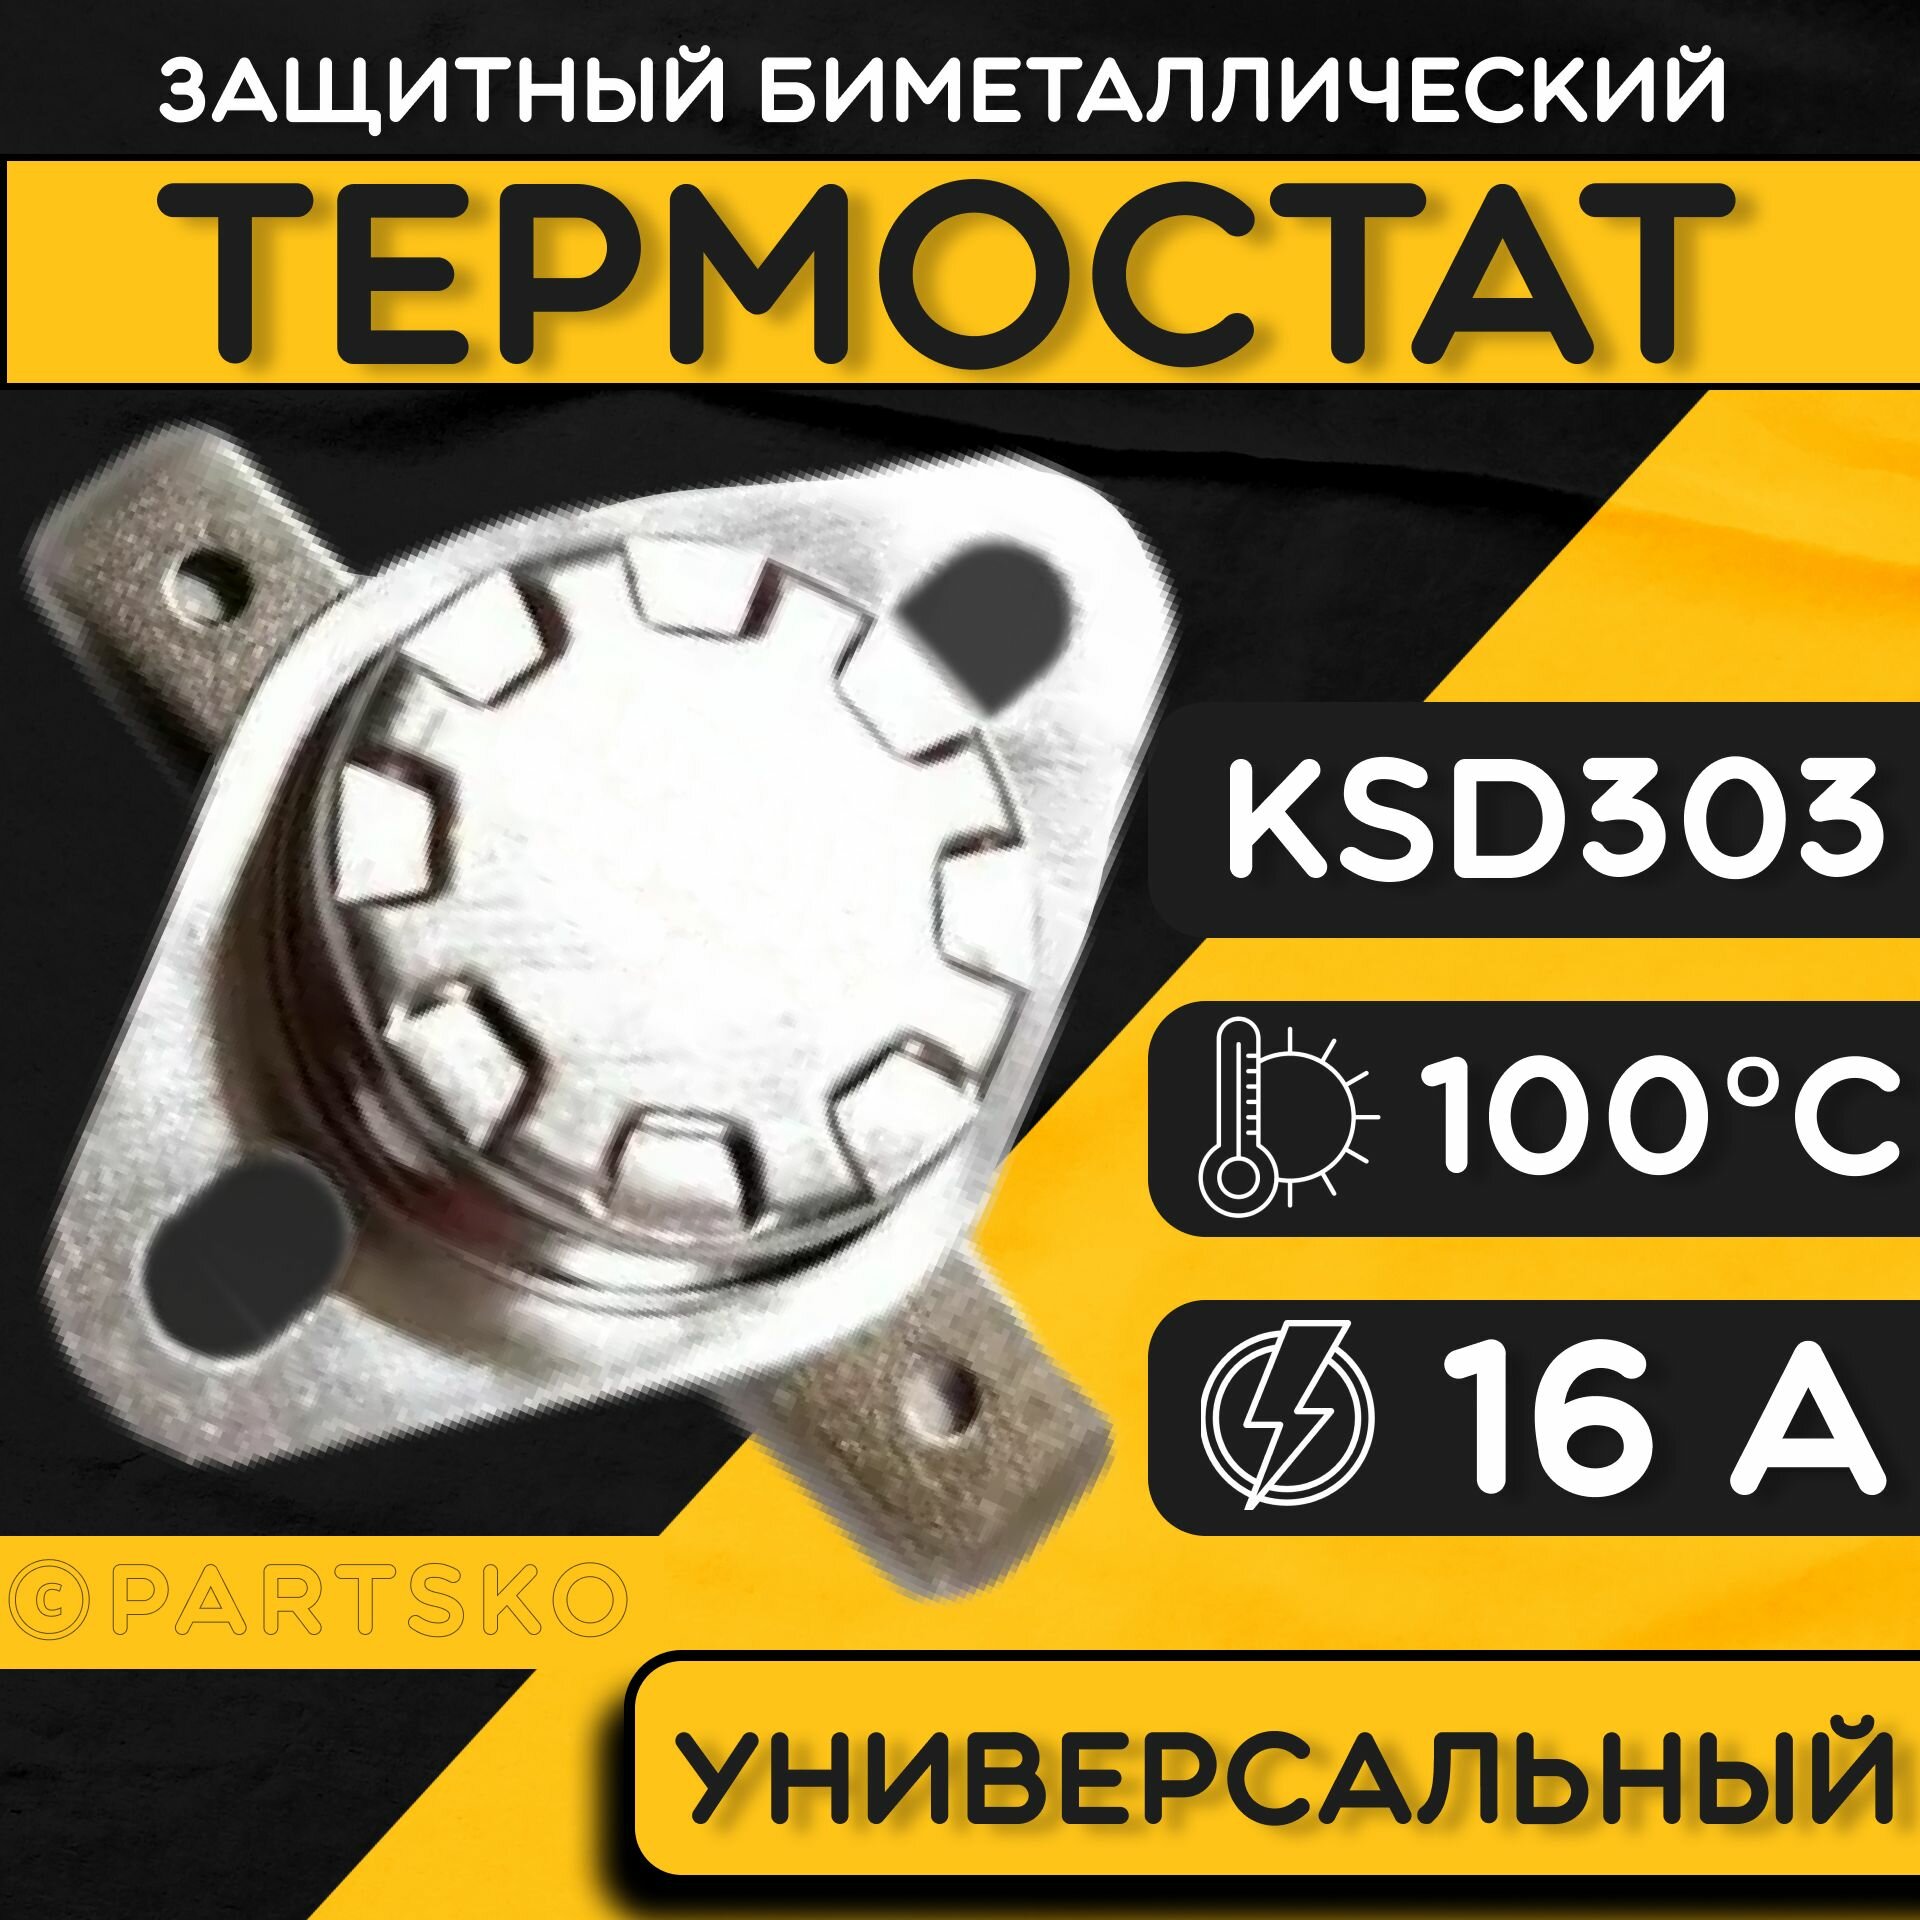 Термостат для водонагревателя биметаллический KSD302, 16A, до 100 градусов. Термодатчик / регулятор температуры универсальный, самовозвратный. - фотография № 1